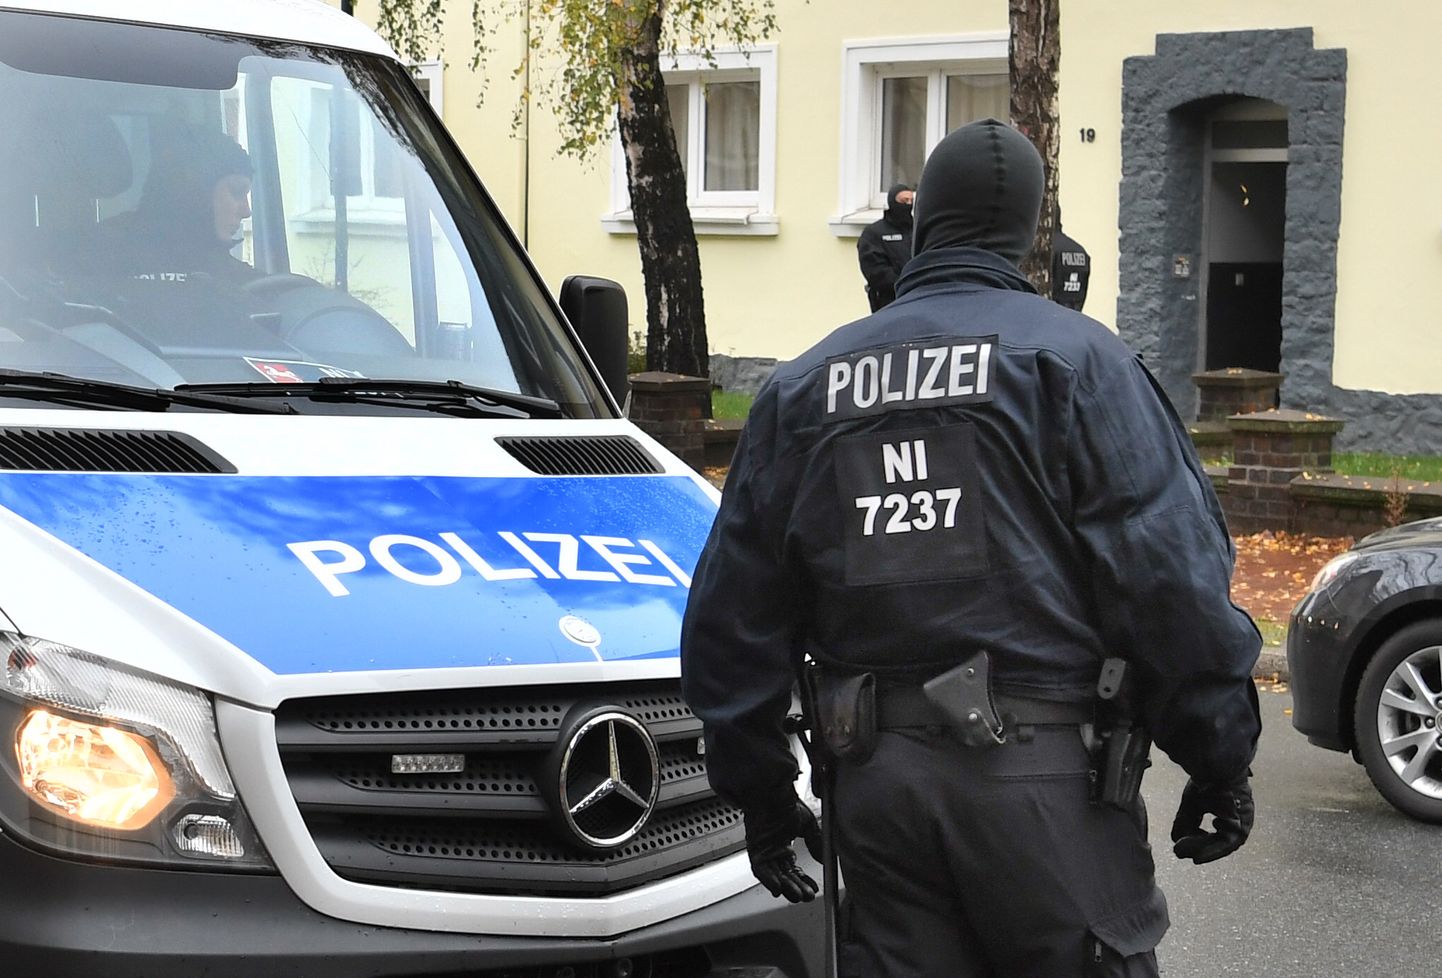 Saksmaaa võimud on viimastel nädalatel pidanud tegelema mitme oma kodanikuga, keda kahtlustatakse seotuses äärmusrühmitusega Islamiriik.